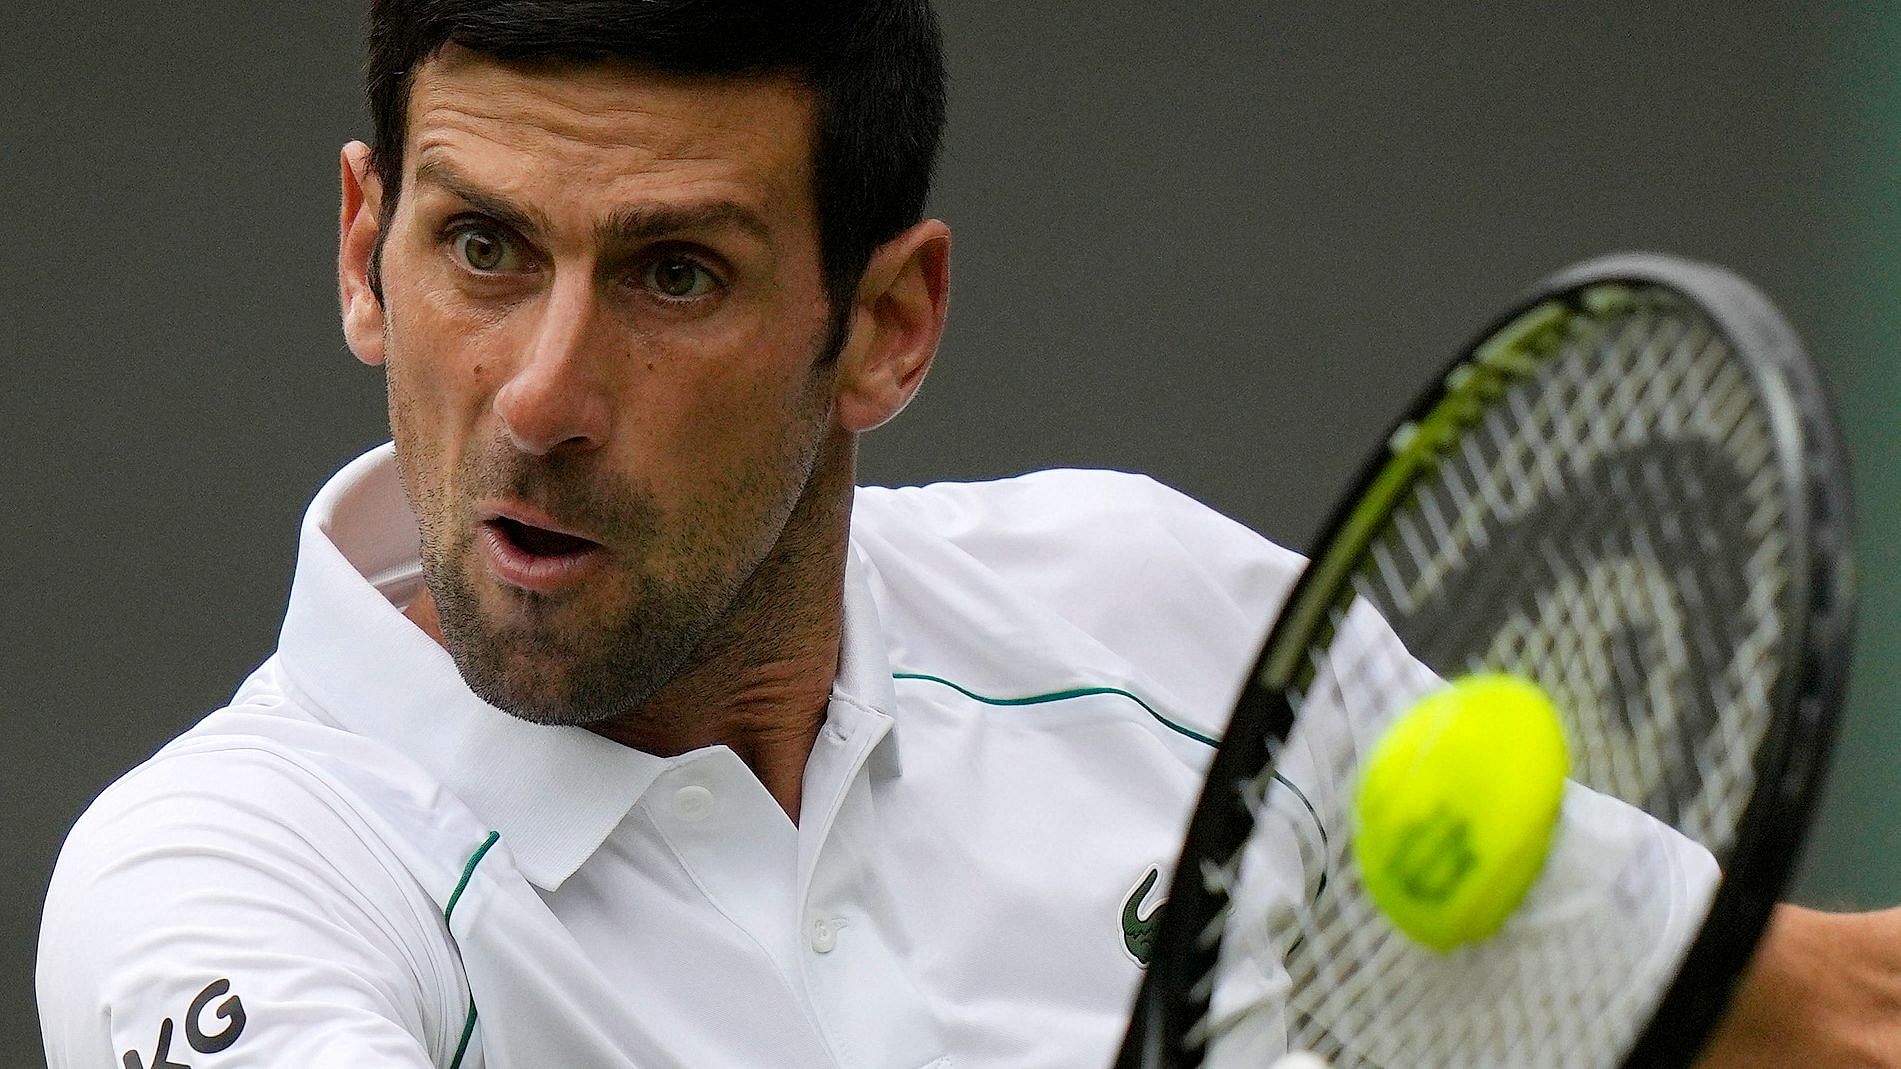 <div class="paragraphs"><p>Novak Djokovic in action at Wimbledon.&nbsp;</p></div>